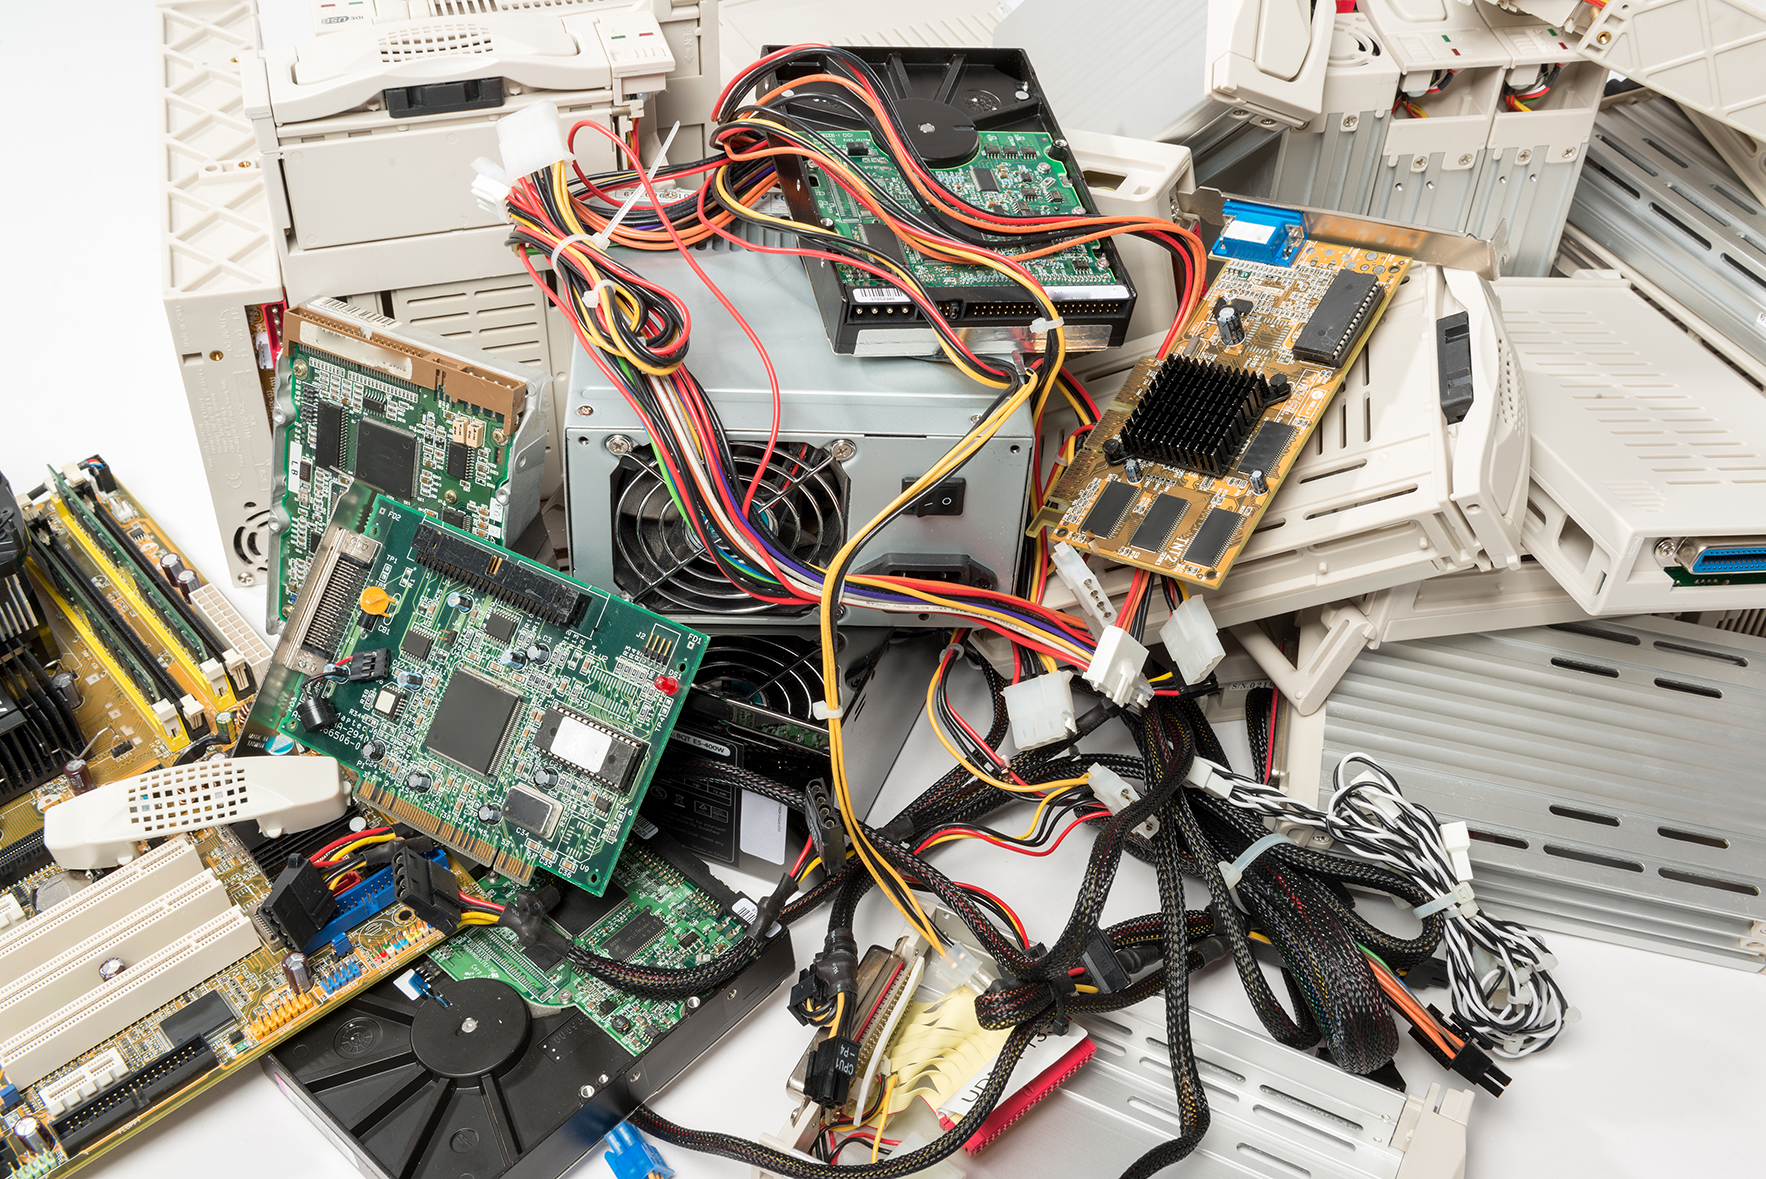 Equipos de cómputo viejos y basura esperando renovación tecnológica, ¿cuándo hacer un cambio de equipos TI?